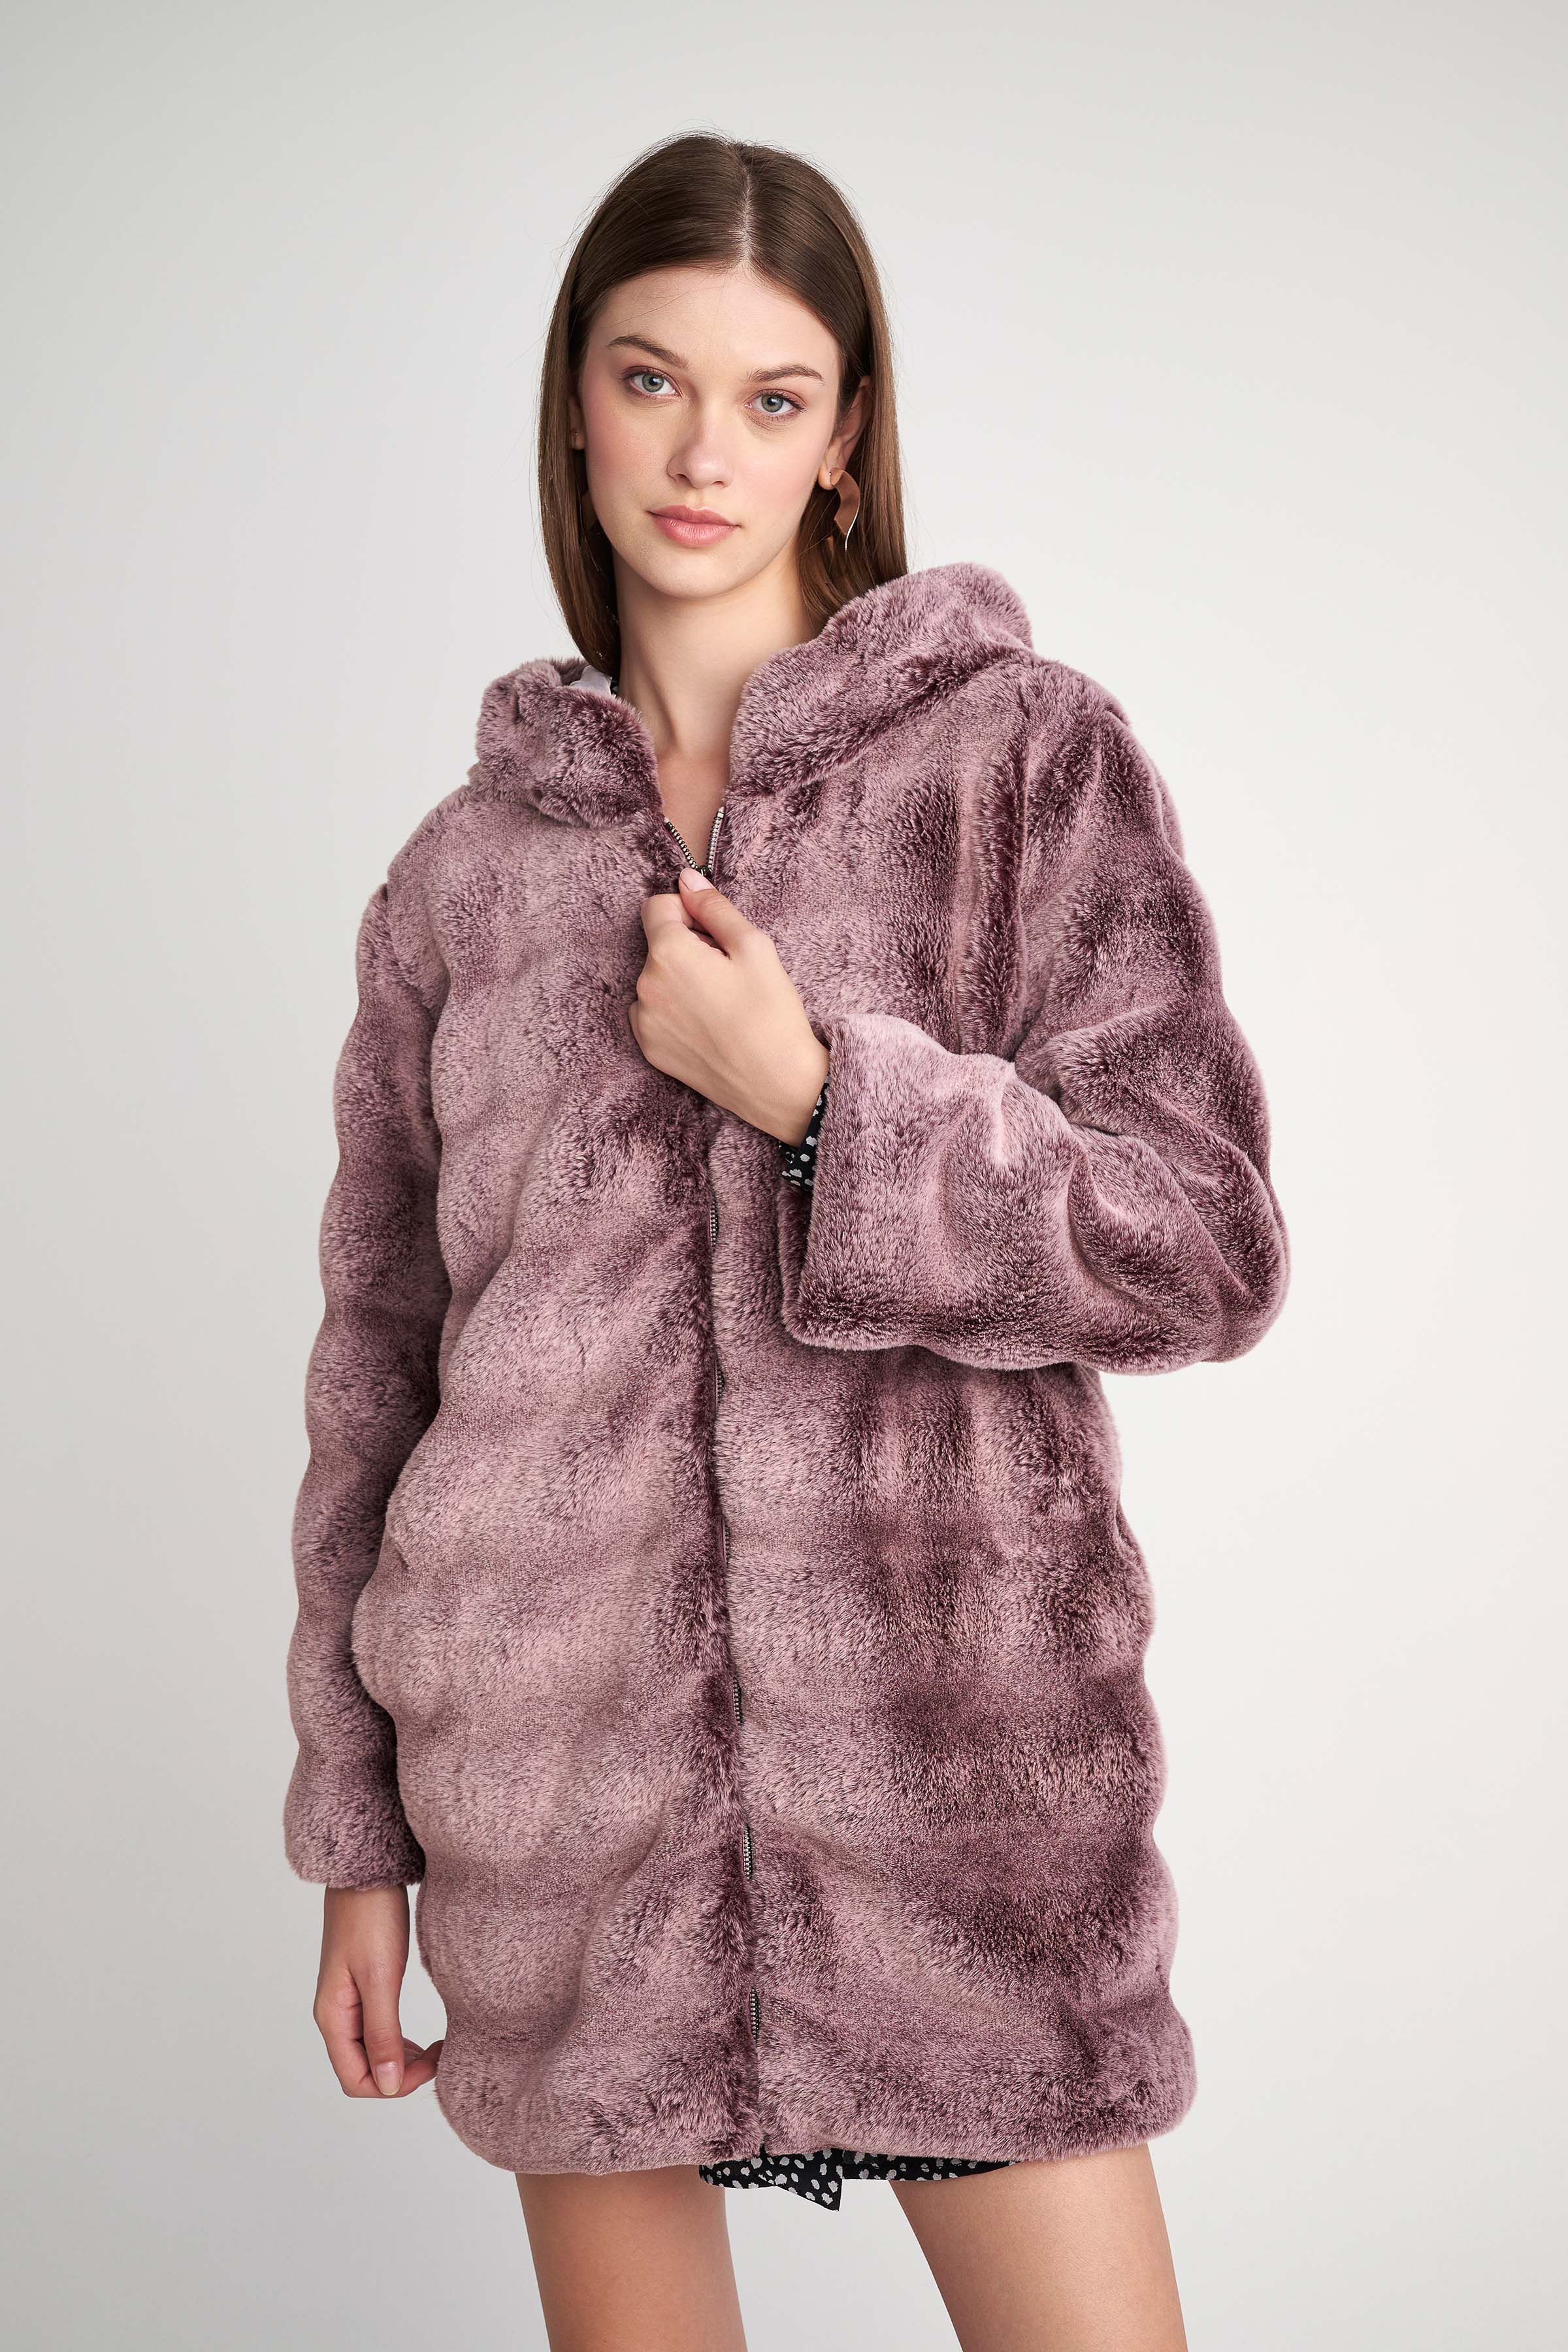 Παλτό από συνθετική γούνα Pink 5207251934183